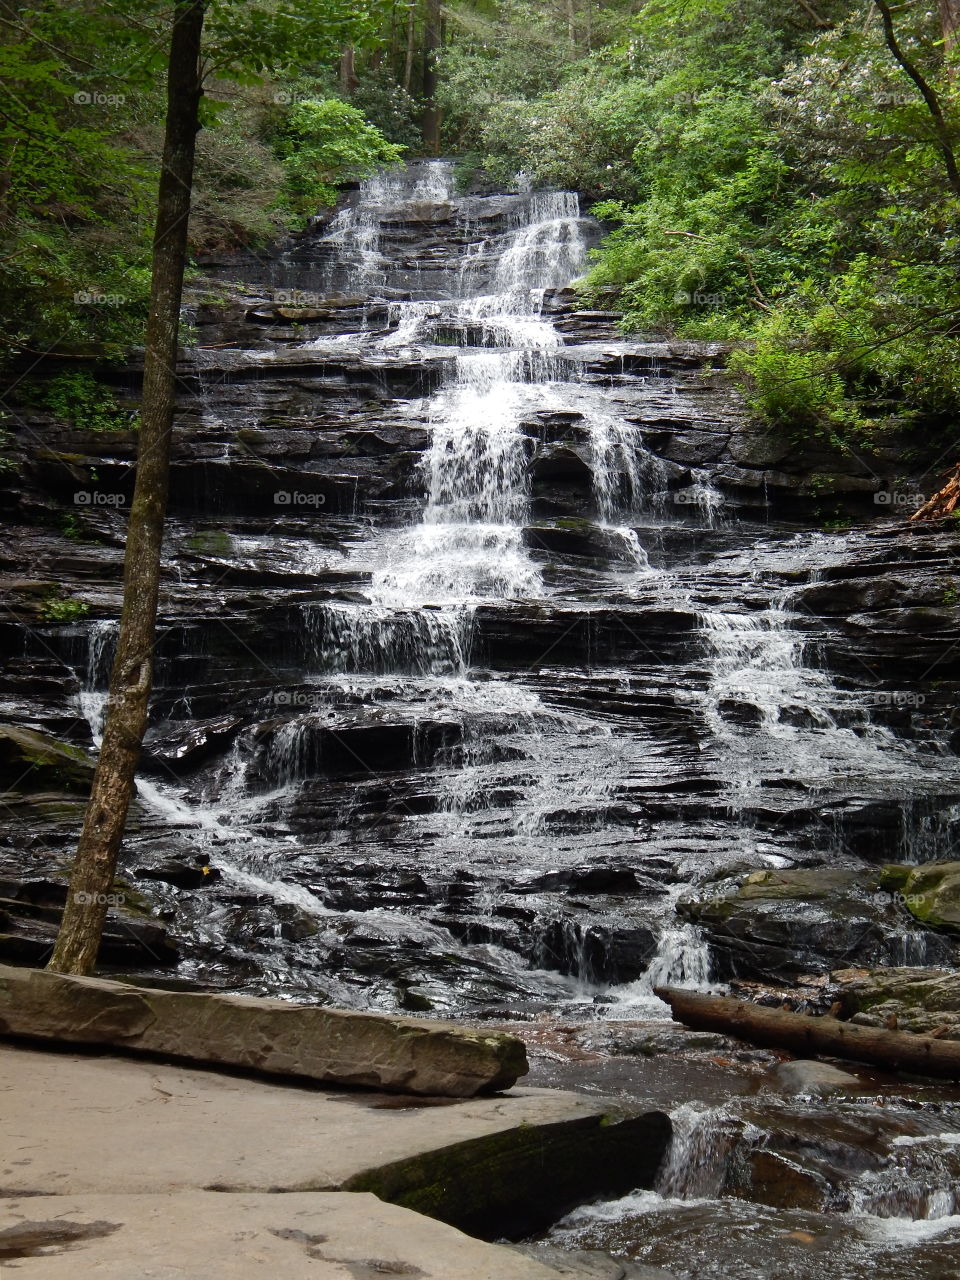 Minnehaha waterfall in Rabun county Georgia